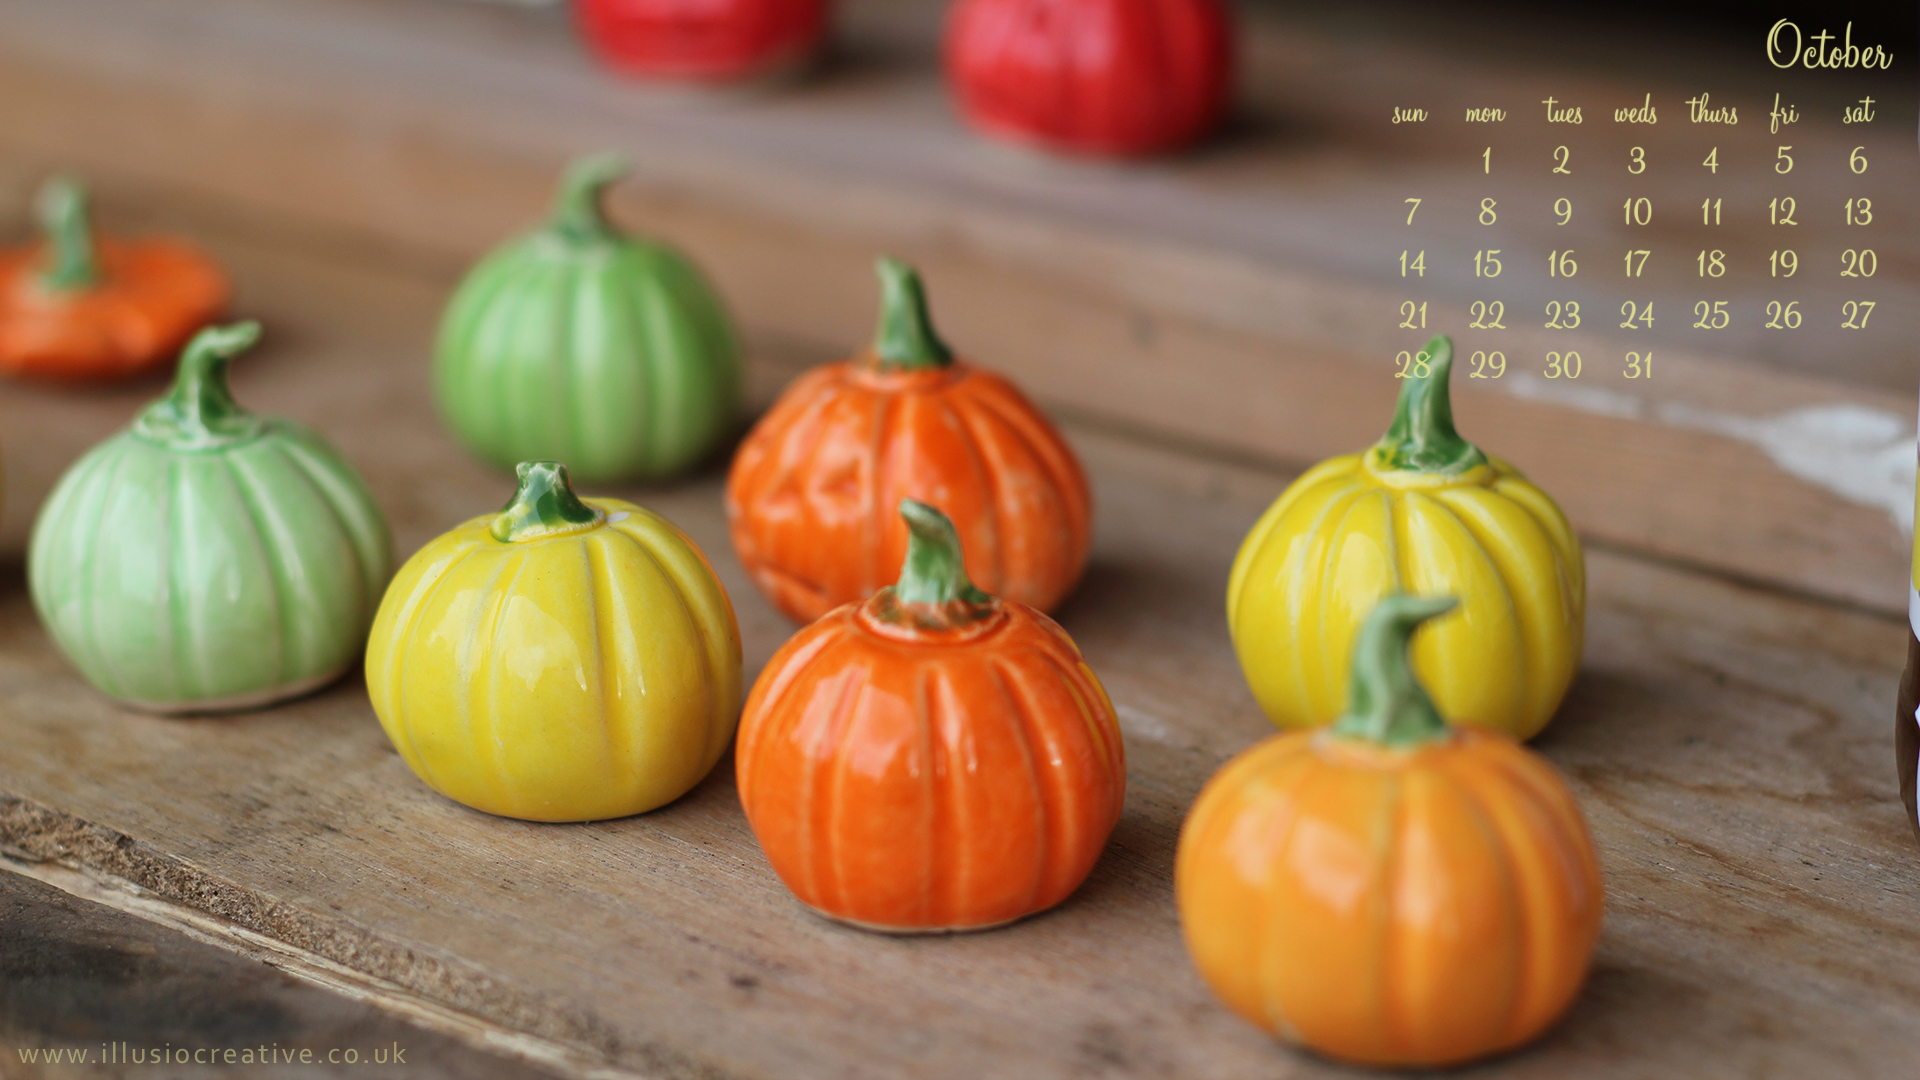 October - 1290 x1080 -Little Pumpkins